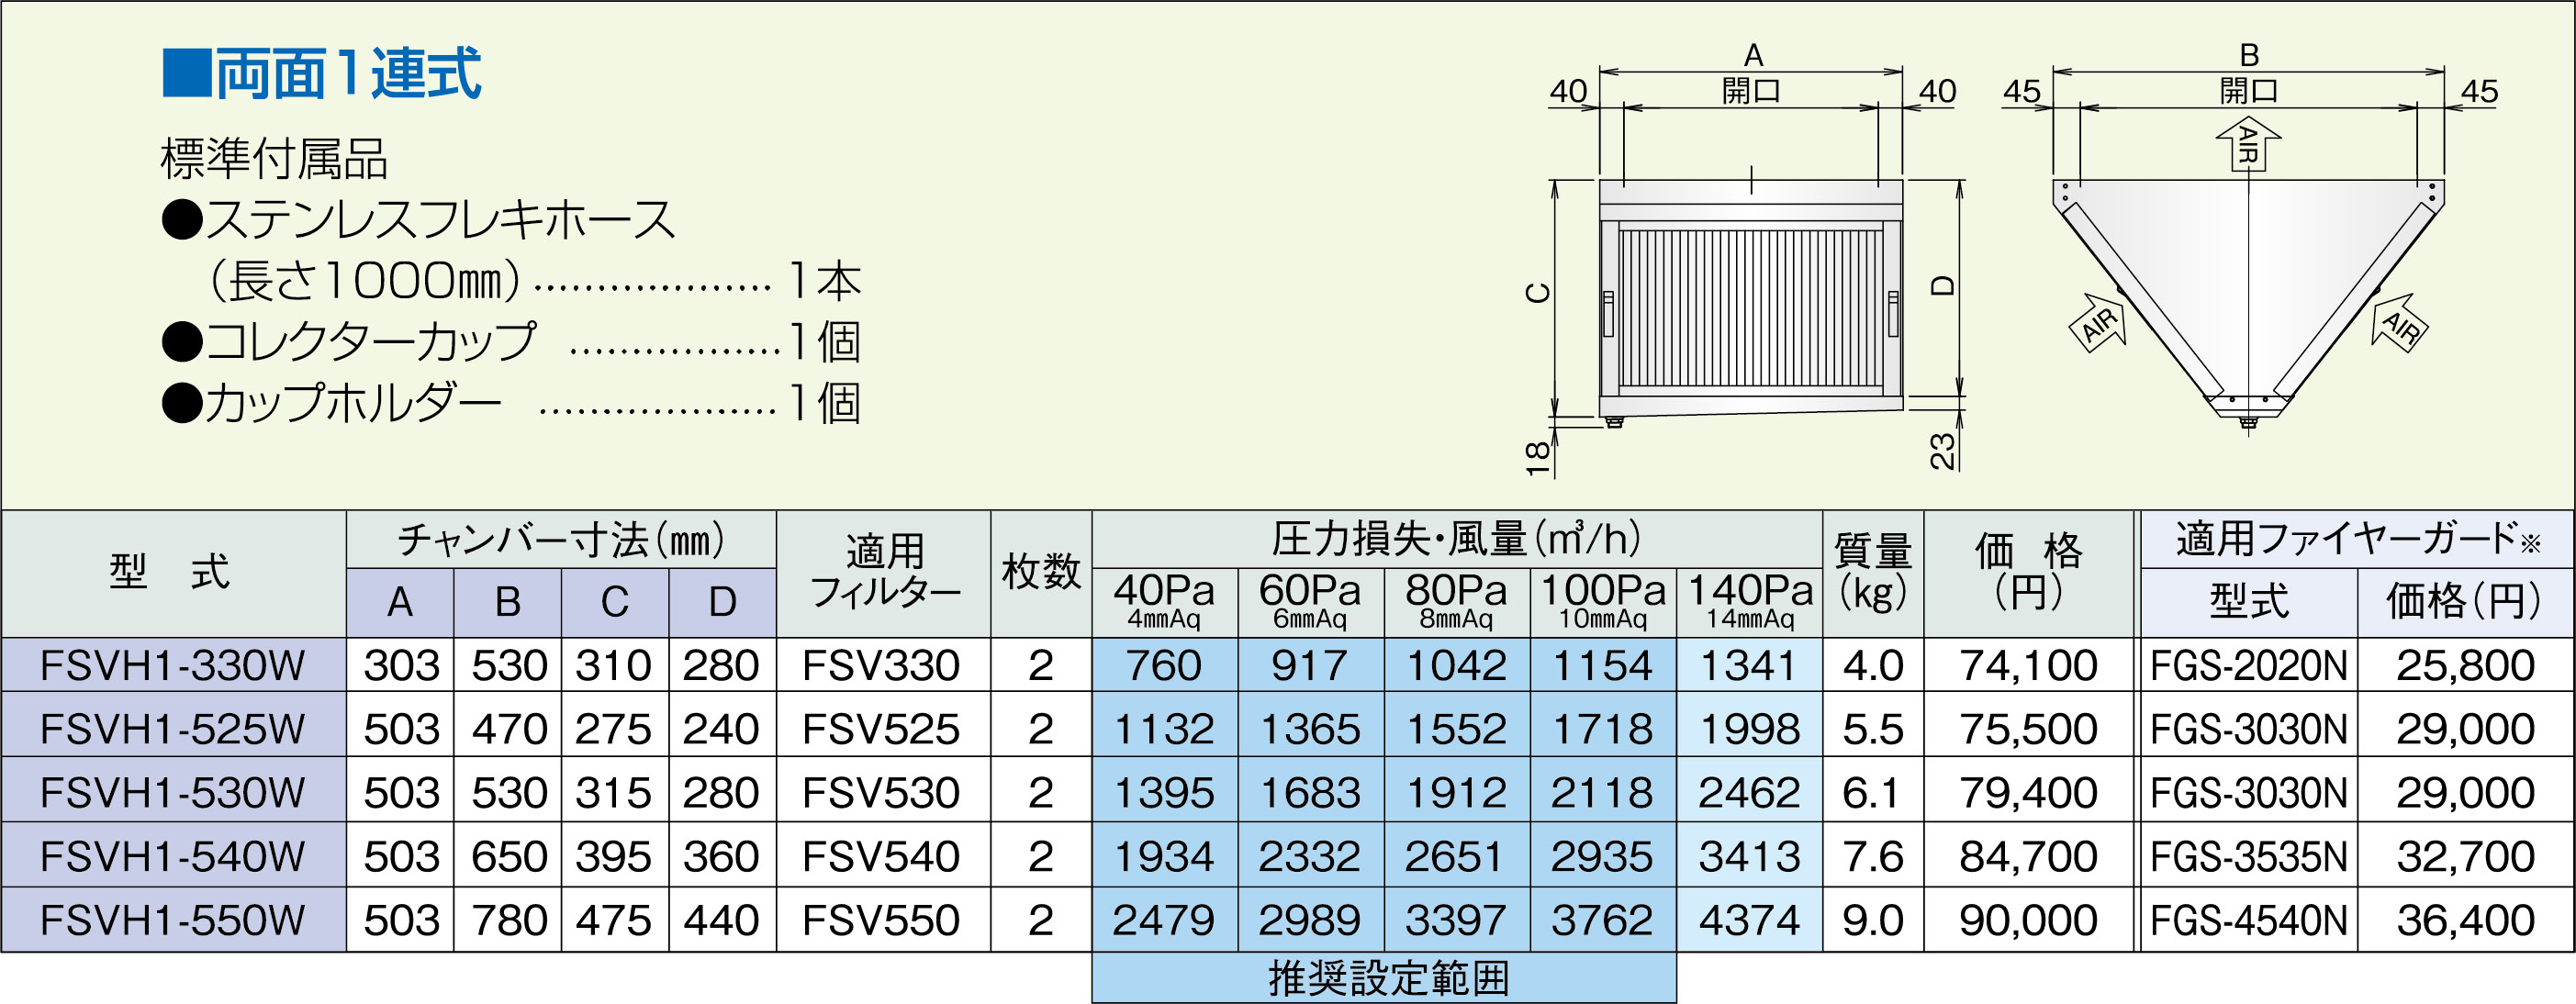 世界的に有名な インテリアショップ 卓越商事ホーコス グリースフィルター FSVH3-525S 高風量Vフィルター FSVHタイプ 片面3連式 